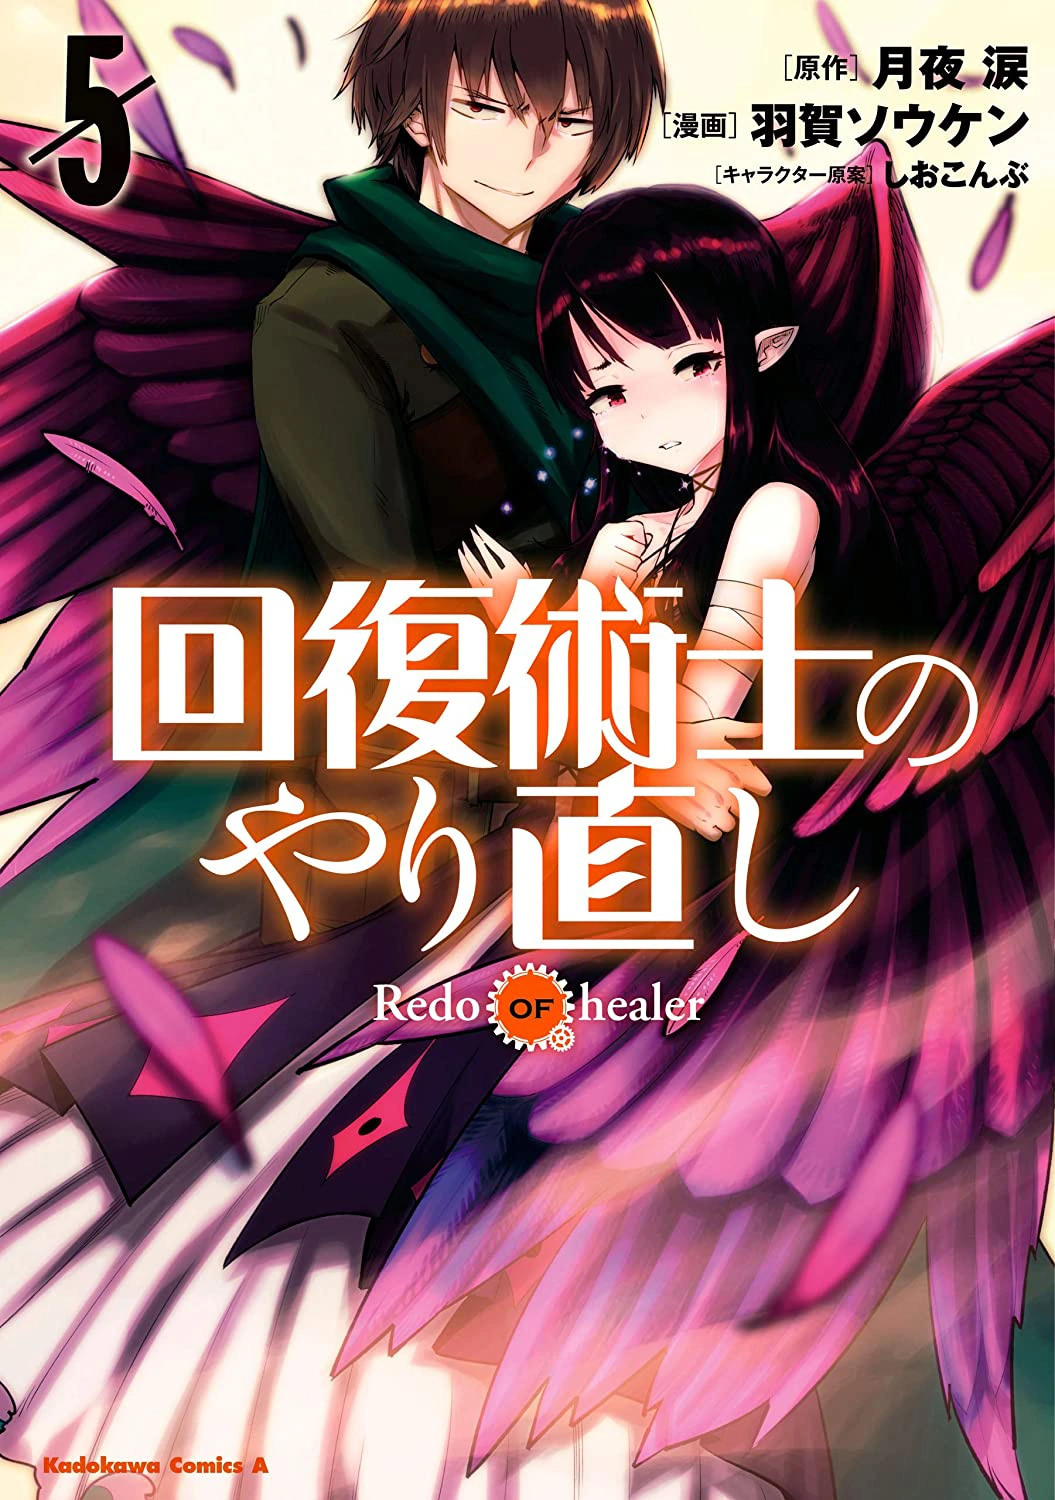 Kudasai - Portada del octavo volumen recopilatorio de la adaptación a manga  de las novelas ligeras Kaifuku Jutsushi no Yarinaoshi (Redo of Healer), a  cargo de Souken Haga, y que será puesto